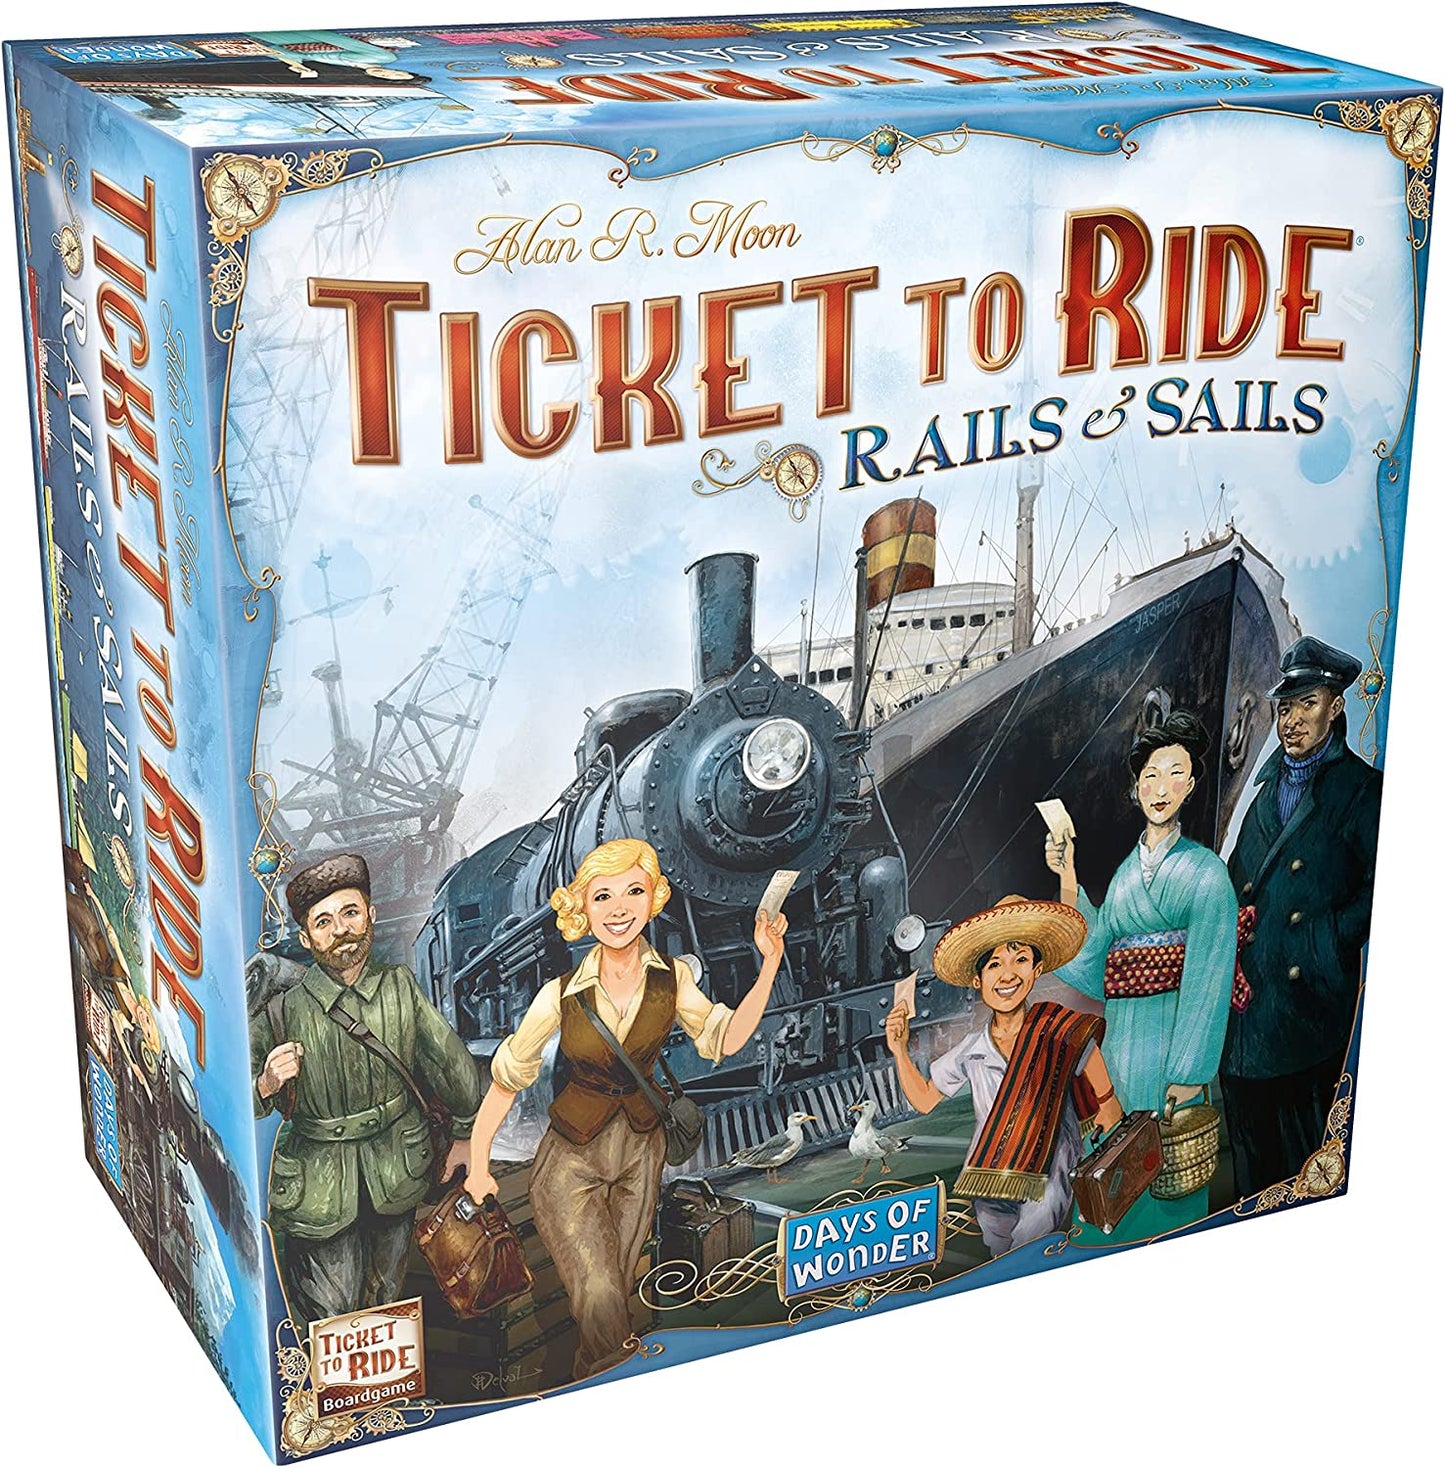 Ticket To Ride Rails & Sails Days of Wonder